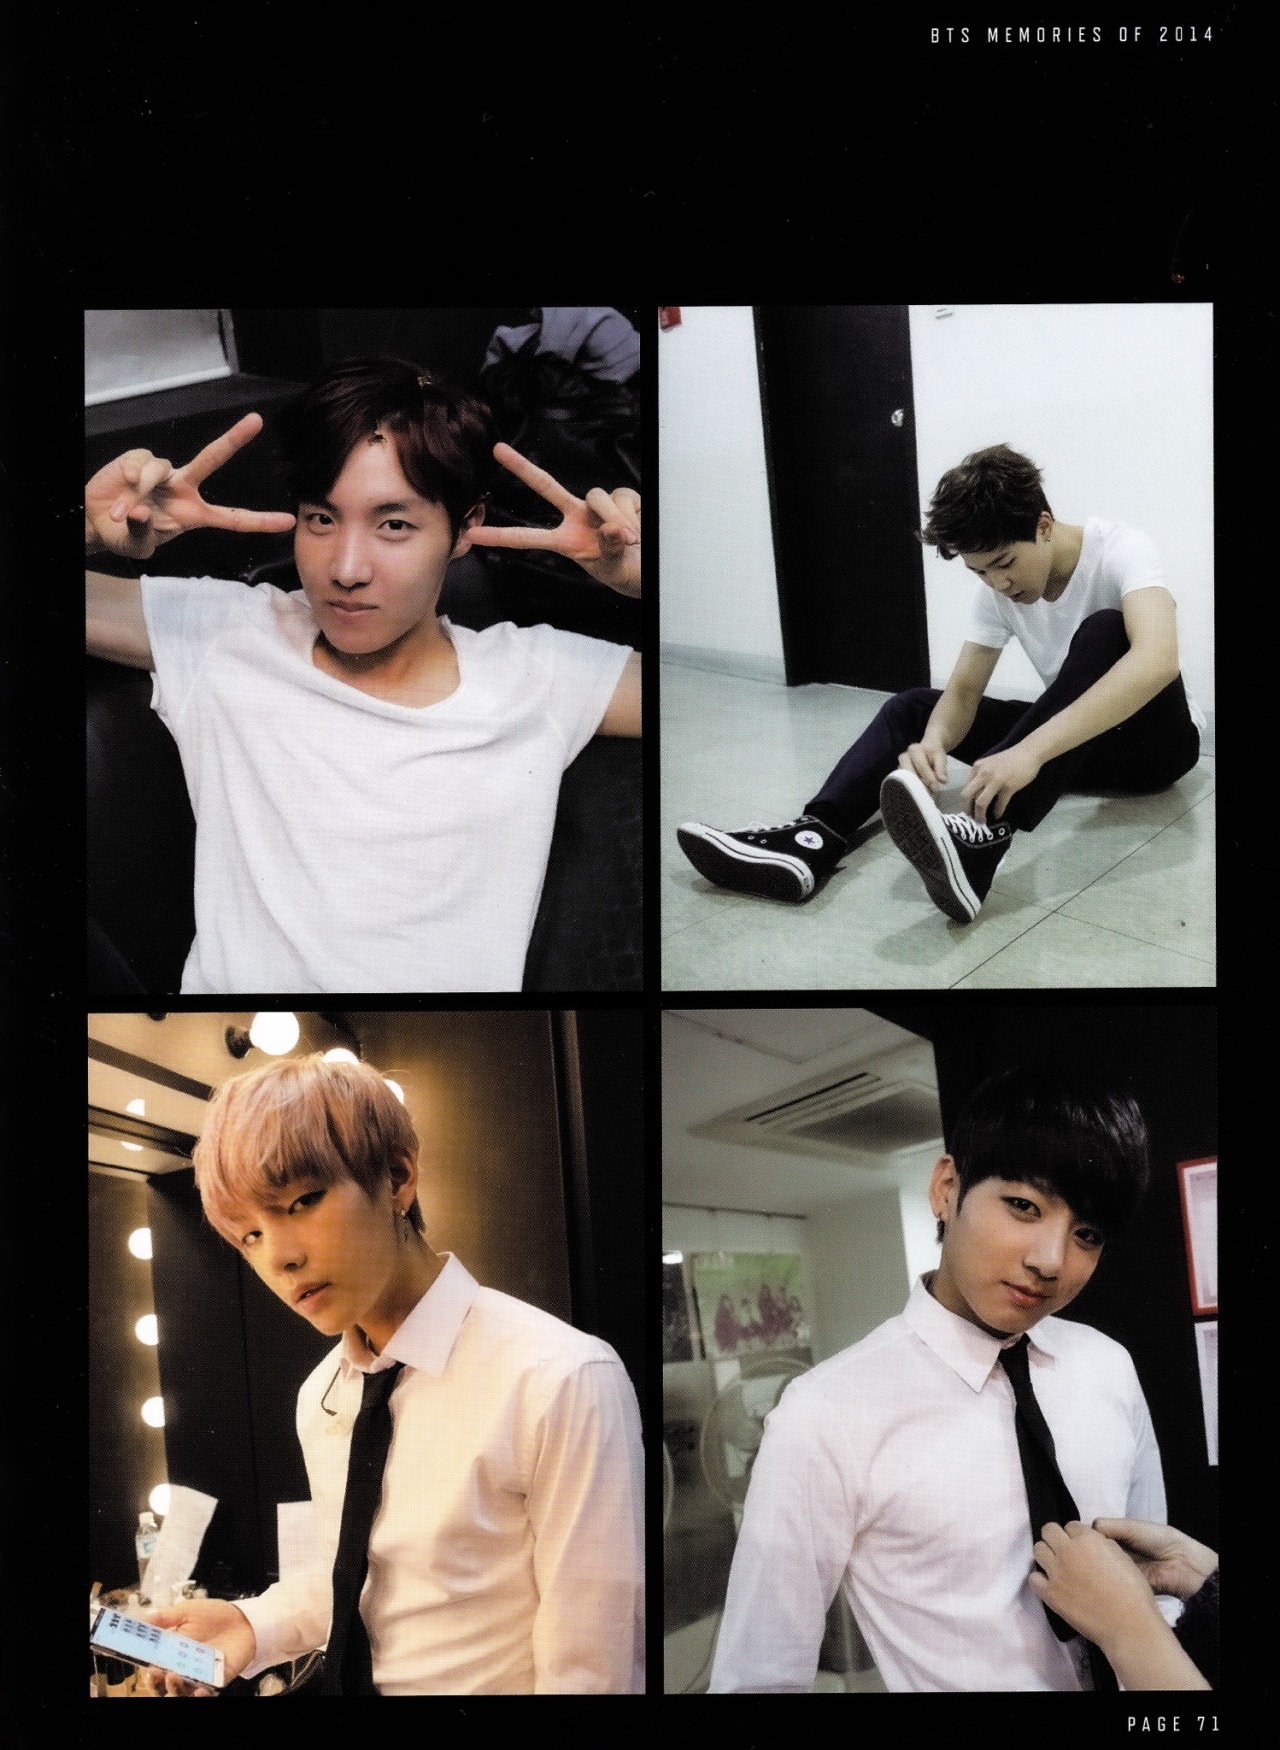 nextstep_jk — Memories 2014 Photobook - BTS Live Trilogy